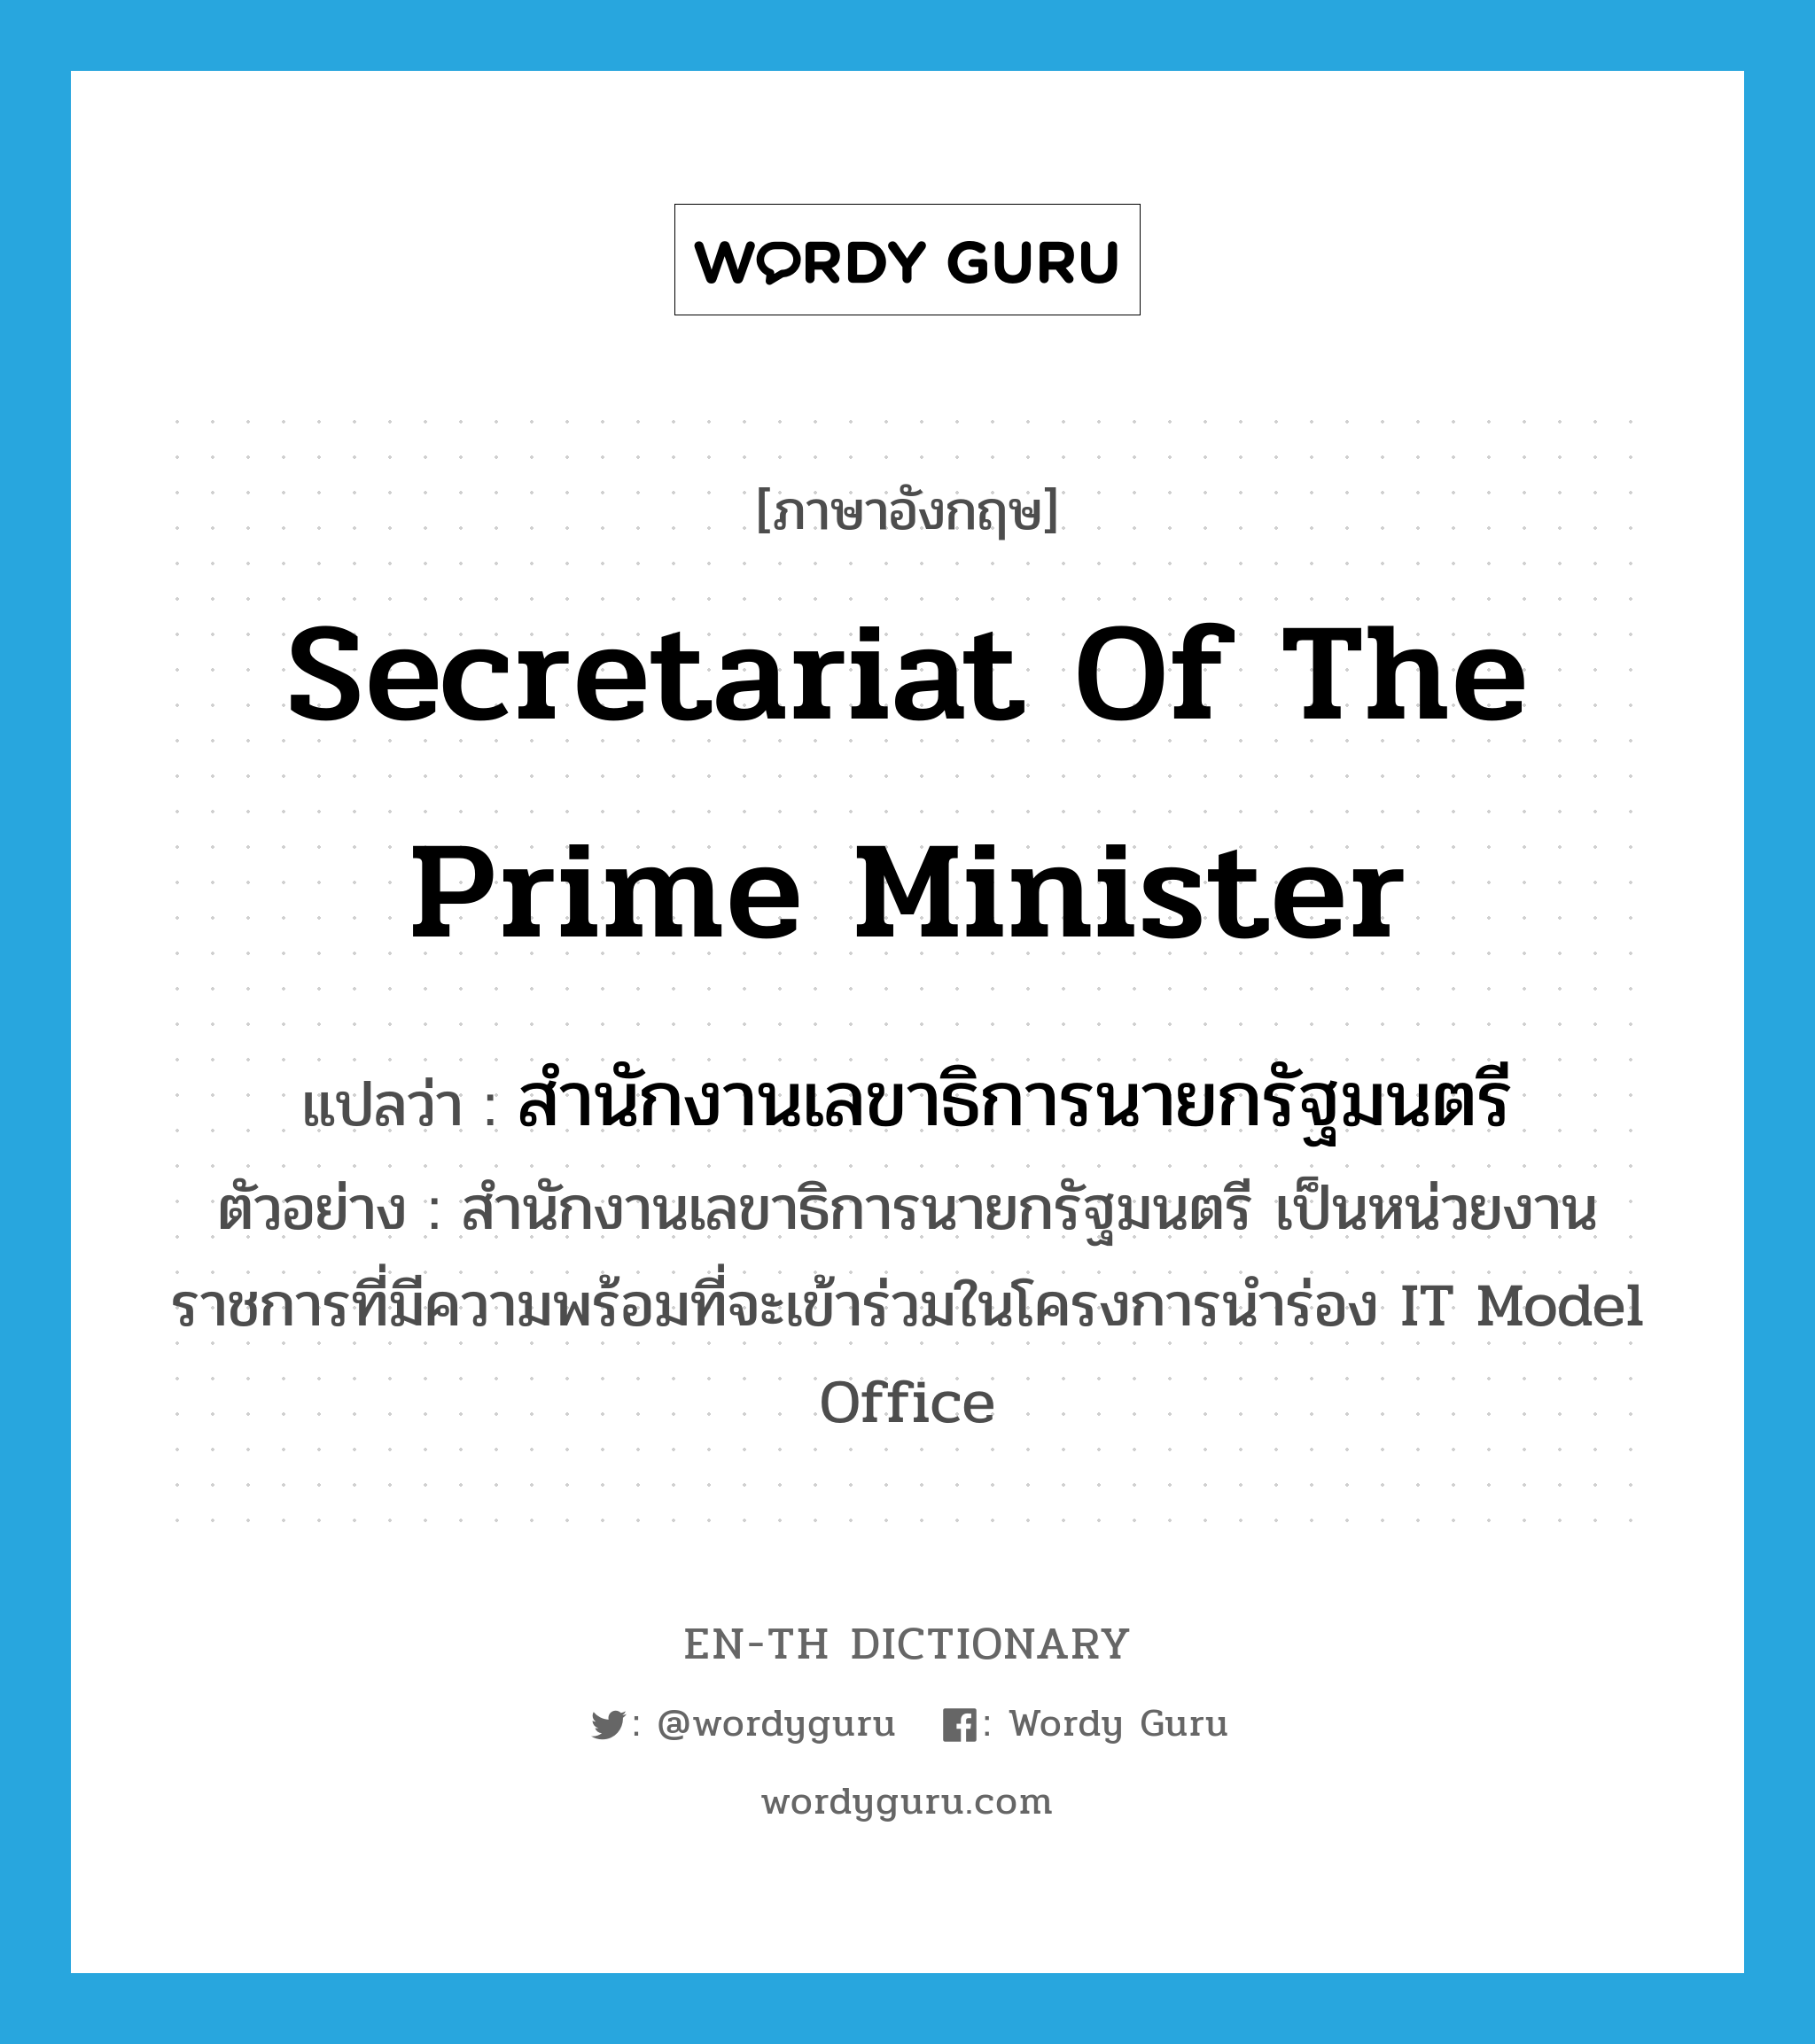 สำนักงานเลขาธิการนายกรัฐมนตรี ภาษาอังกฤษ?, คำศัพท์ภาษาอังกฤษ สำนักงานเลขาธิการนายกรัฐมนตรี แปลว่า Secretariat of the Prime Minister ประเภท N ตัวอย่าง สำนักงานเลขาธิการนายกรัฐมนตรี เป็นหน่วยงานราชการที่มีความพร้อมที่จะเข้าร่วมในโครงการนำร่อง IT Model Office หมวด N